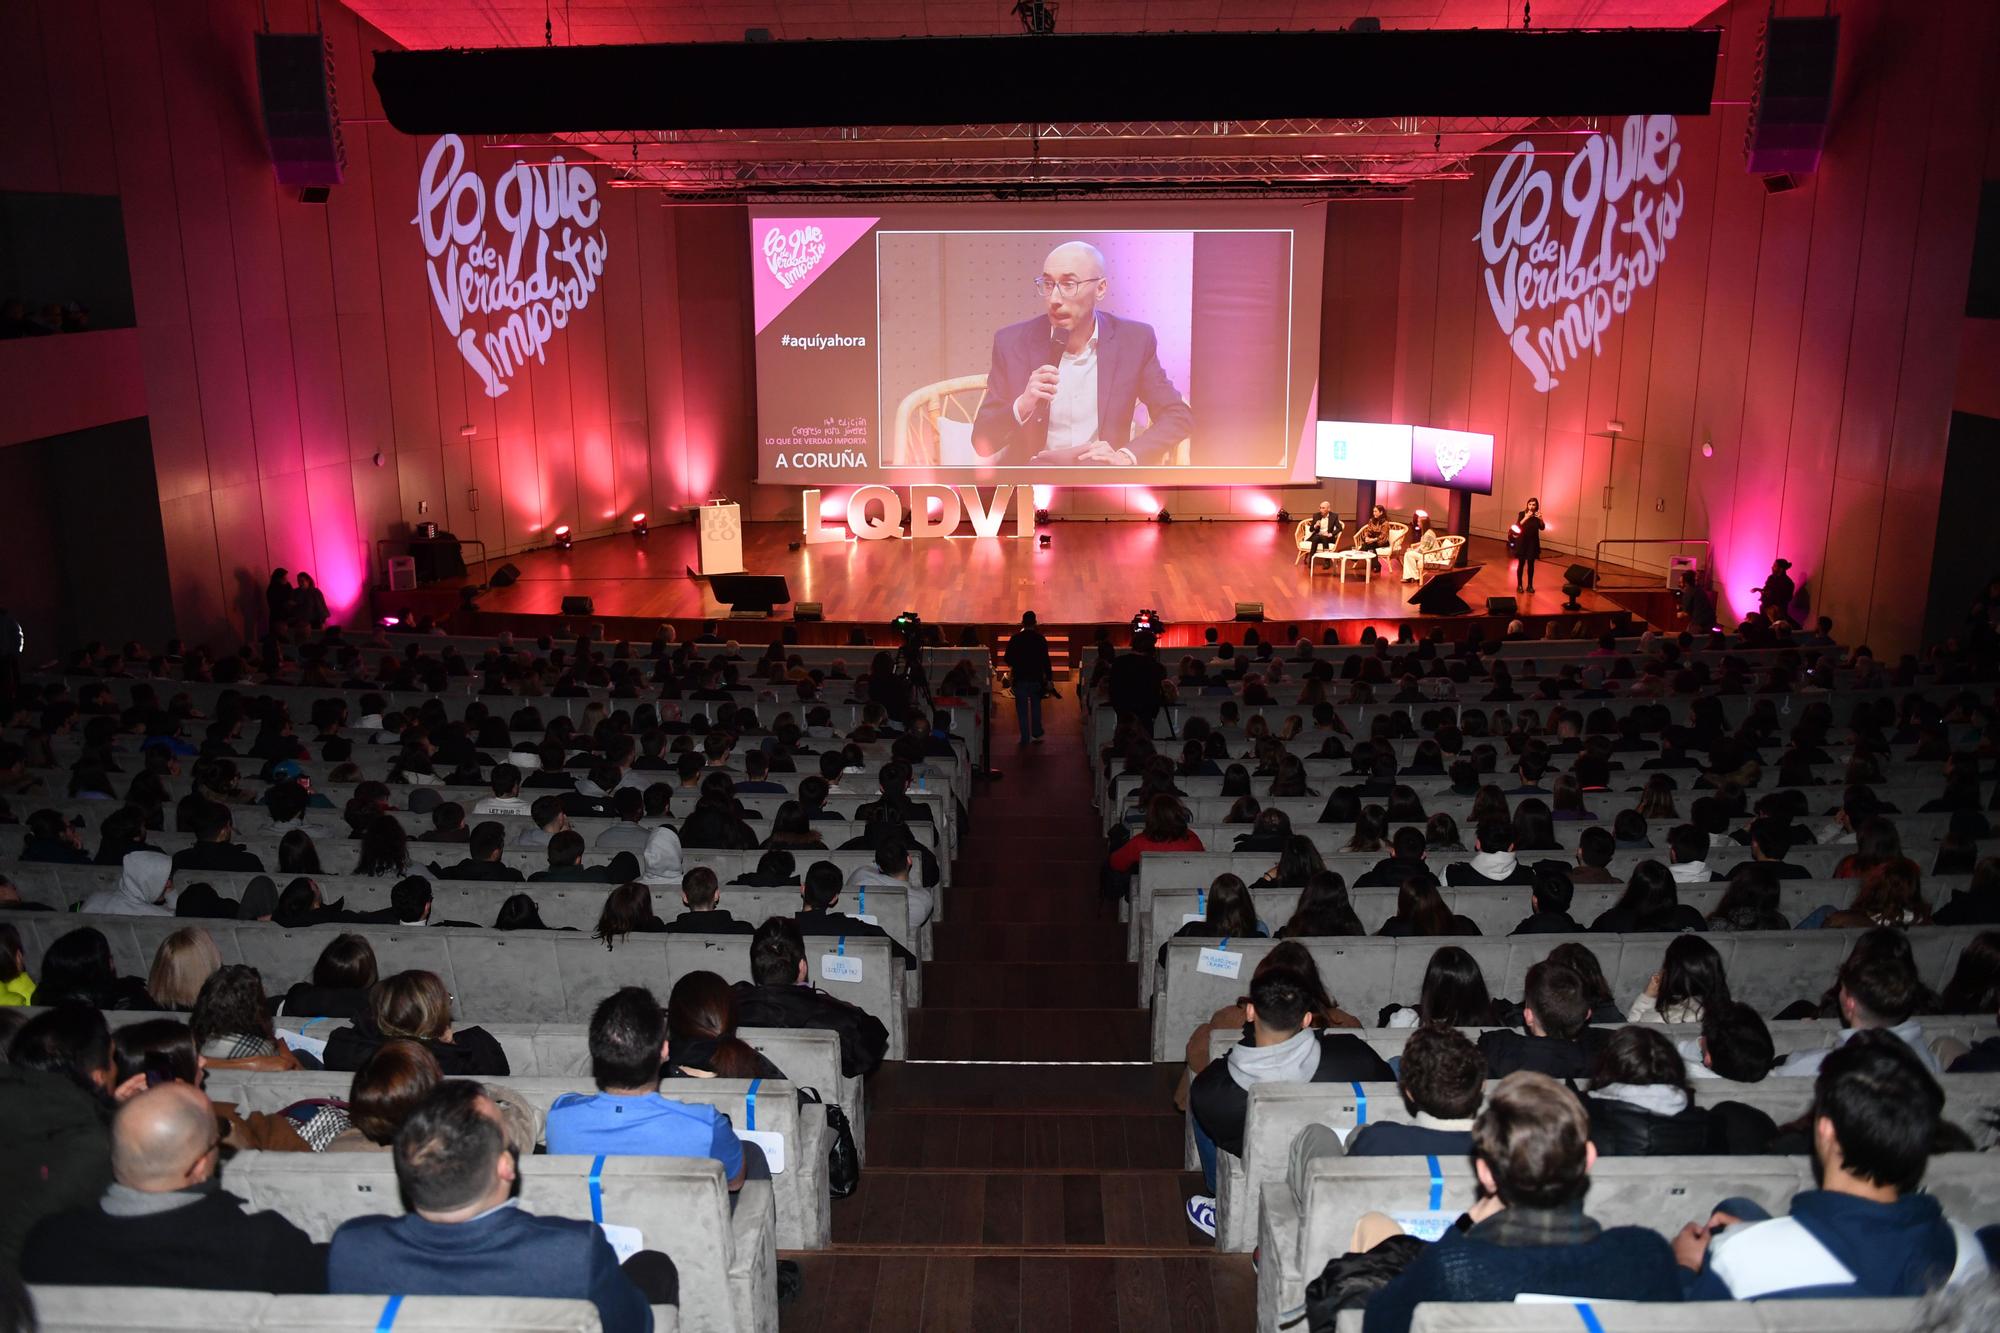 Arranca en A Coruña el congreso 'Lo que de verdad importa' con la Fundación María José Jove